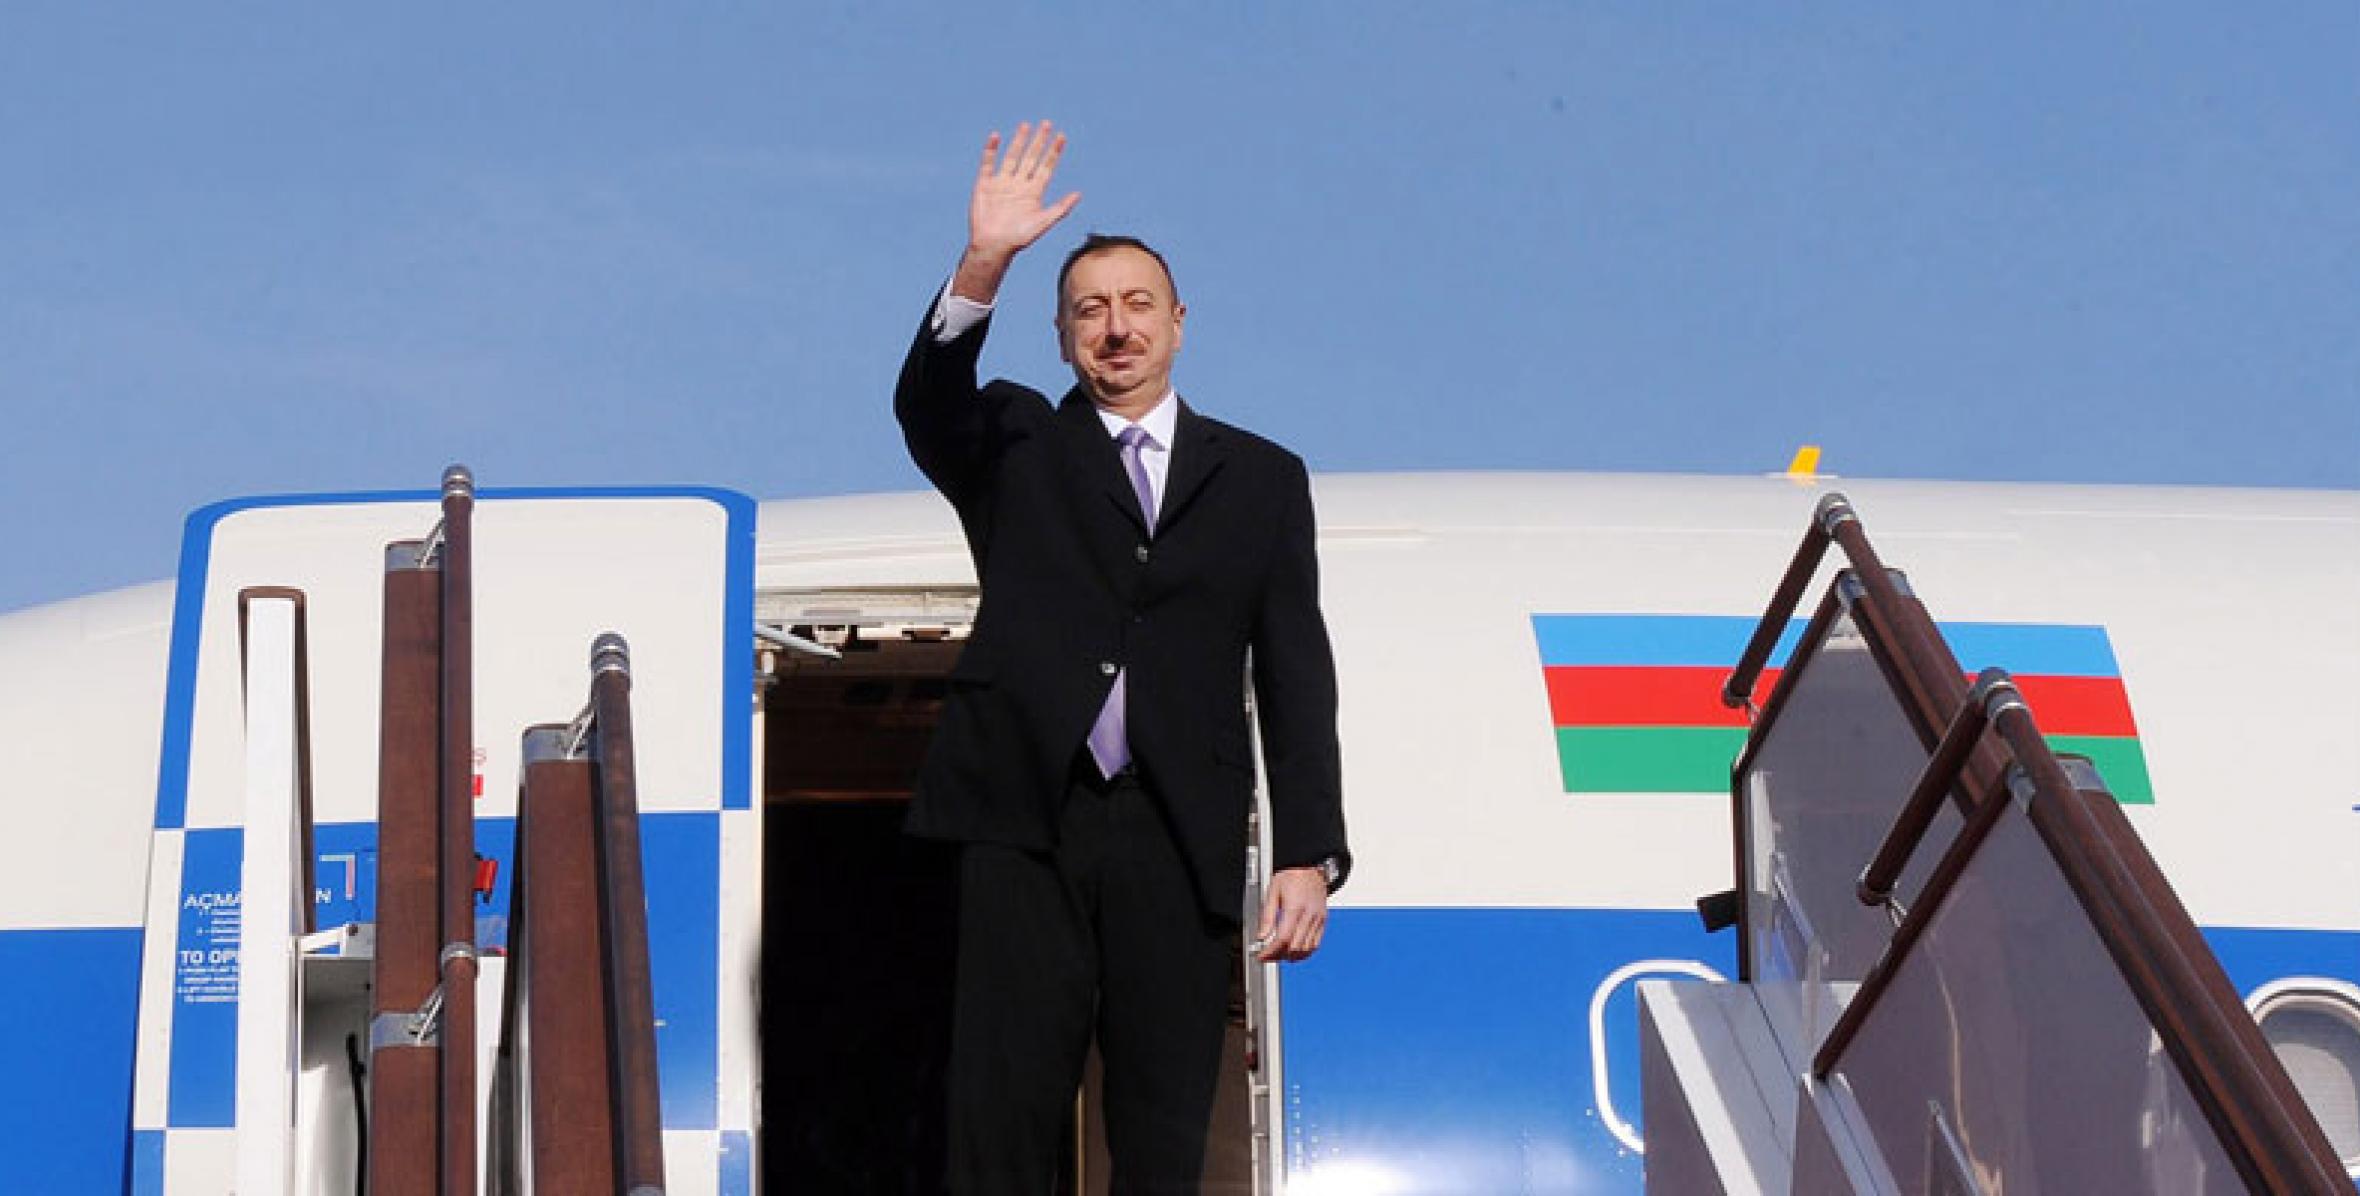 Ильхам Алиев отбыл с визитом в Казахстан для участия в саммите ОБСЕ